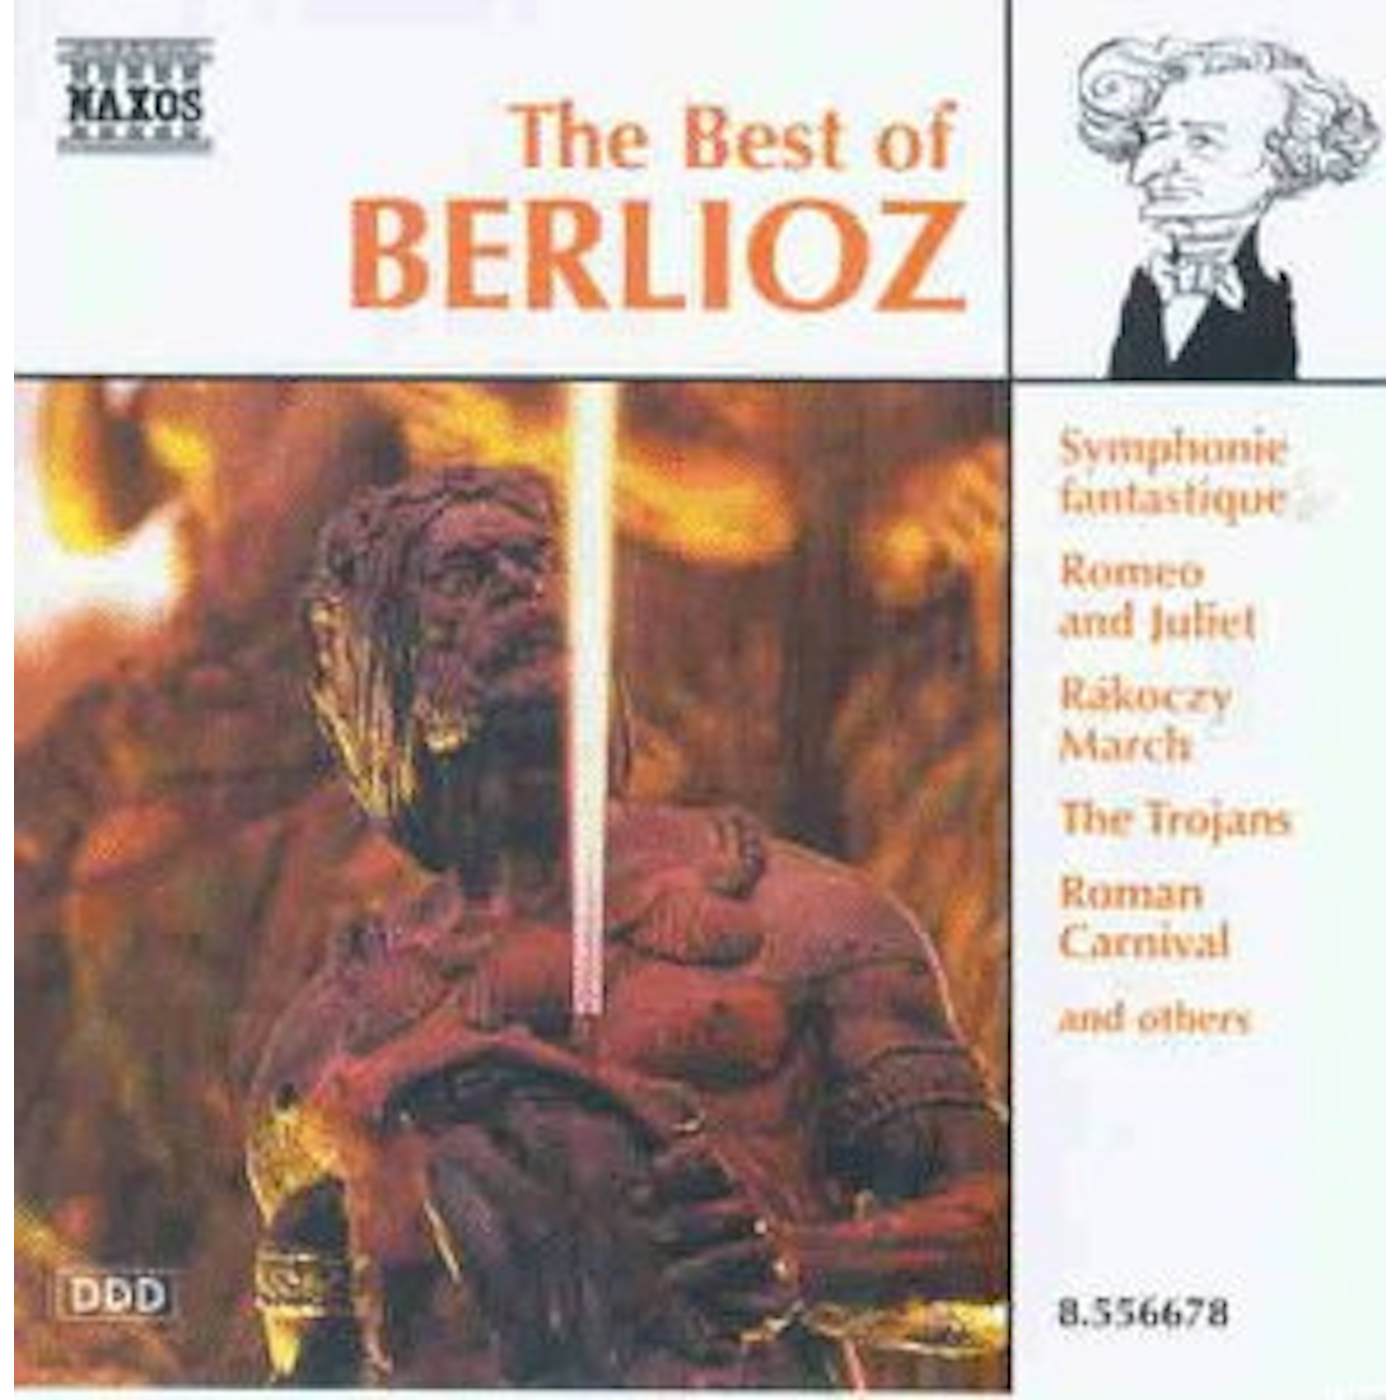 Berlioz BEST OF CD